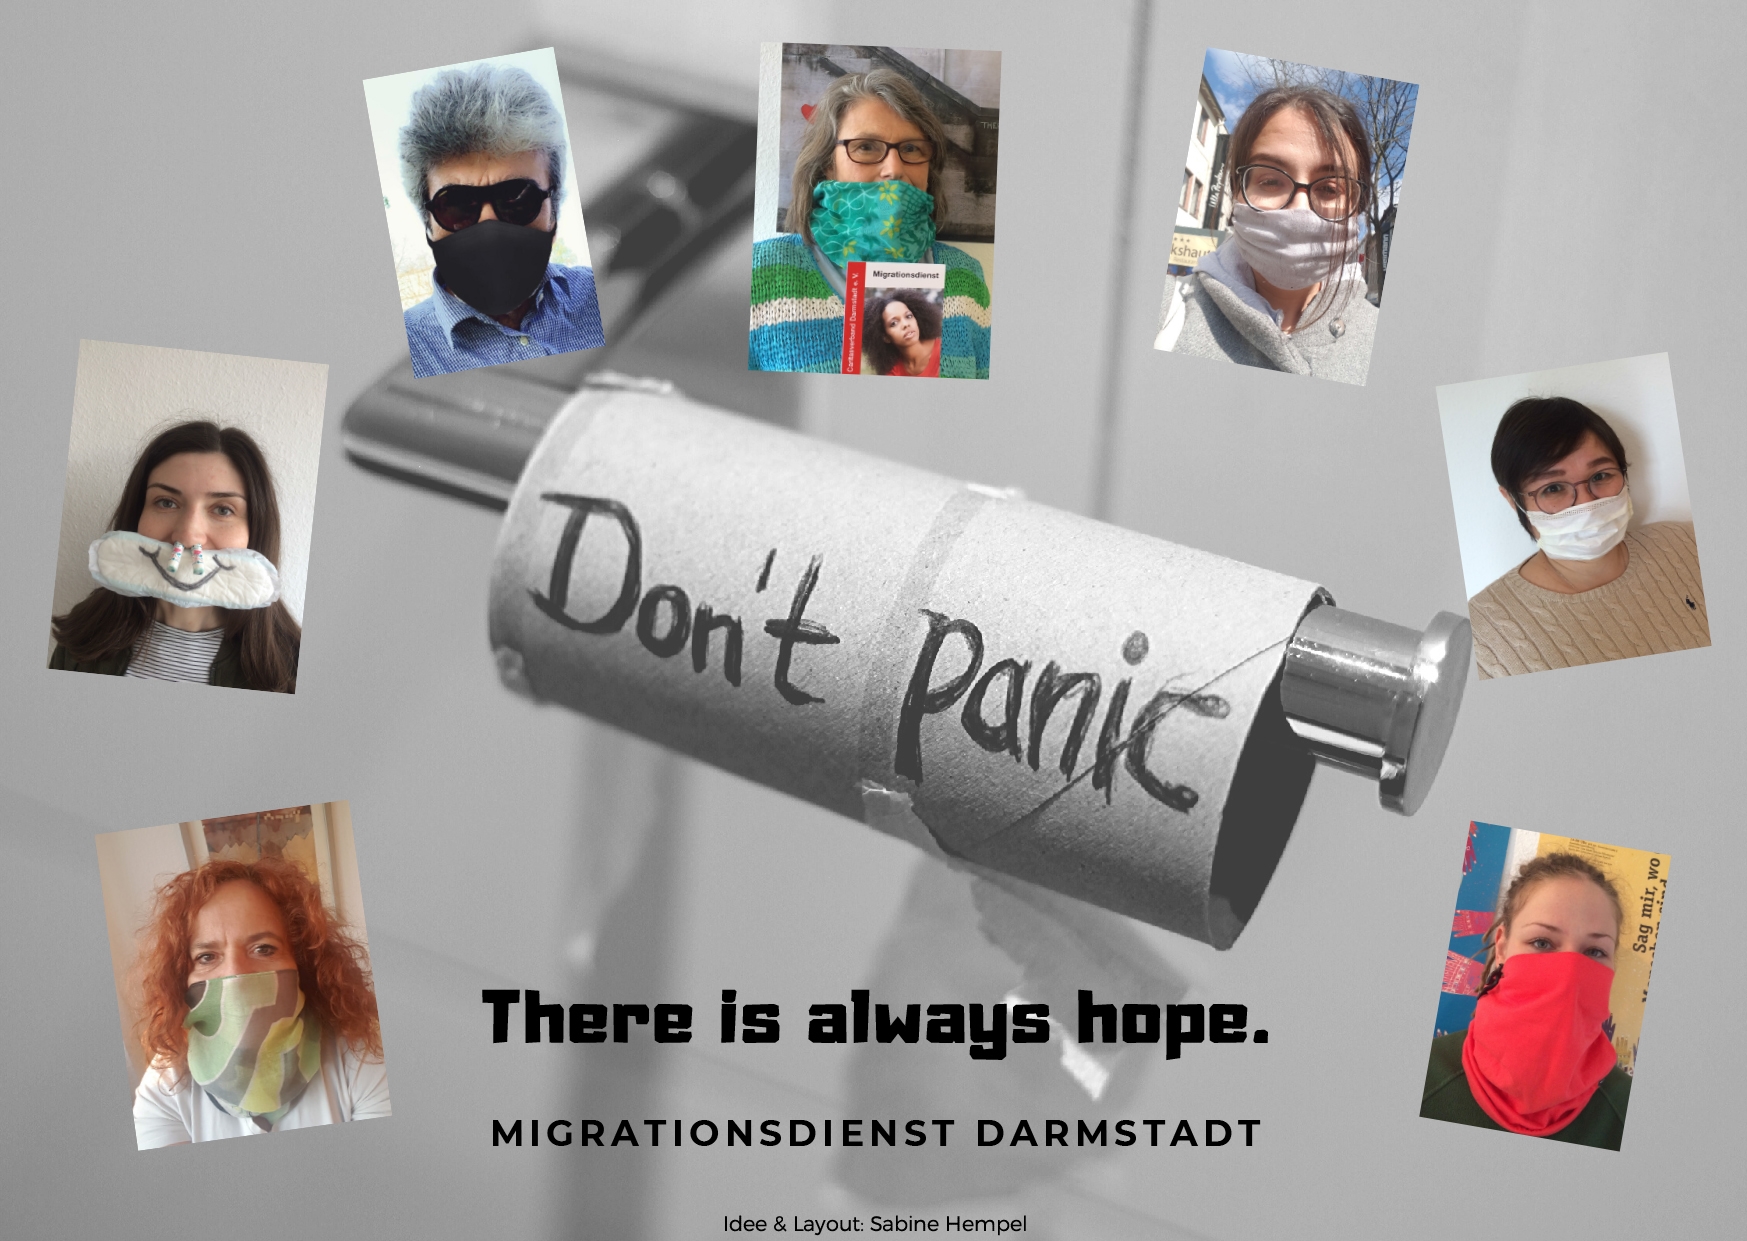 Mitarbeiterinnen mit Mundschutz und eine Toilettenrolle auf der No Panic steht (Caritasverband Darmstadt e. V., Sabine Hempel)